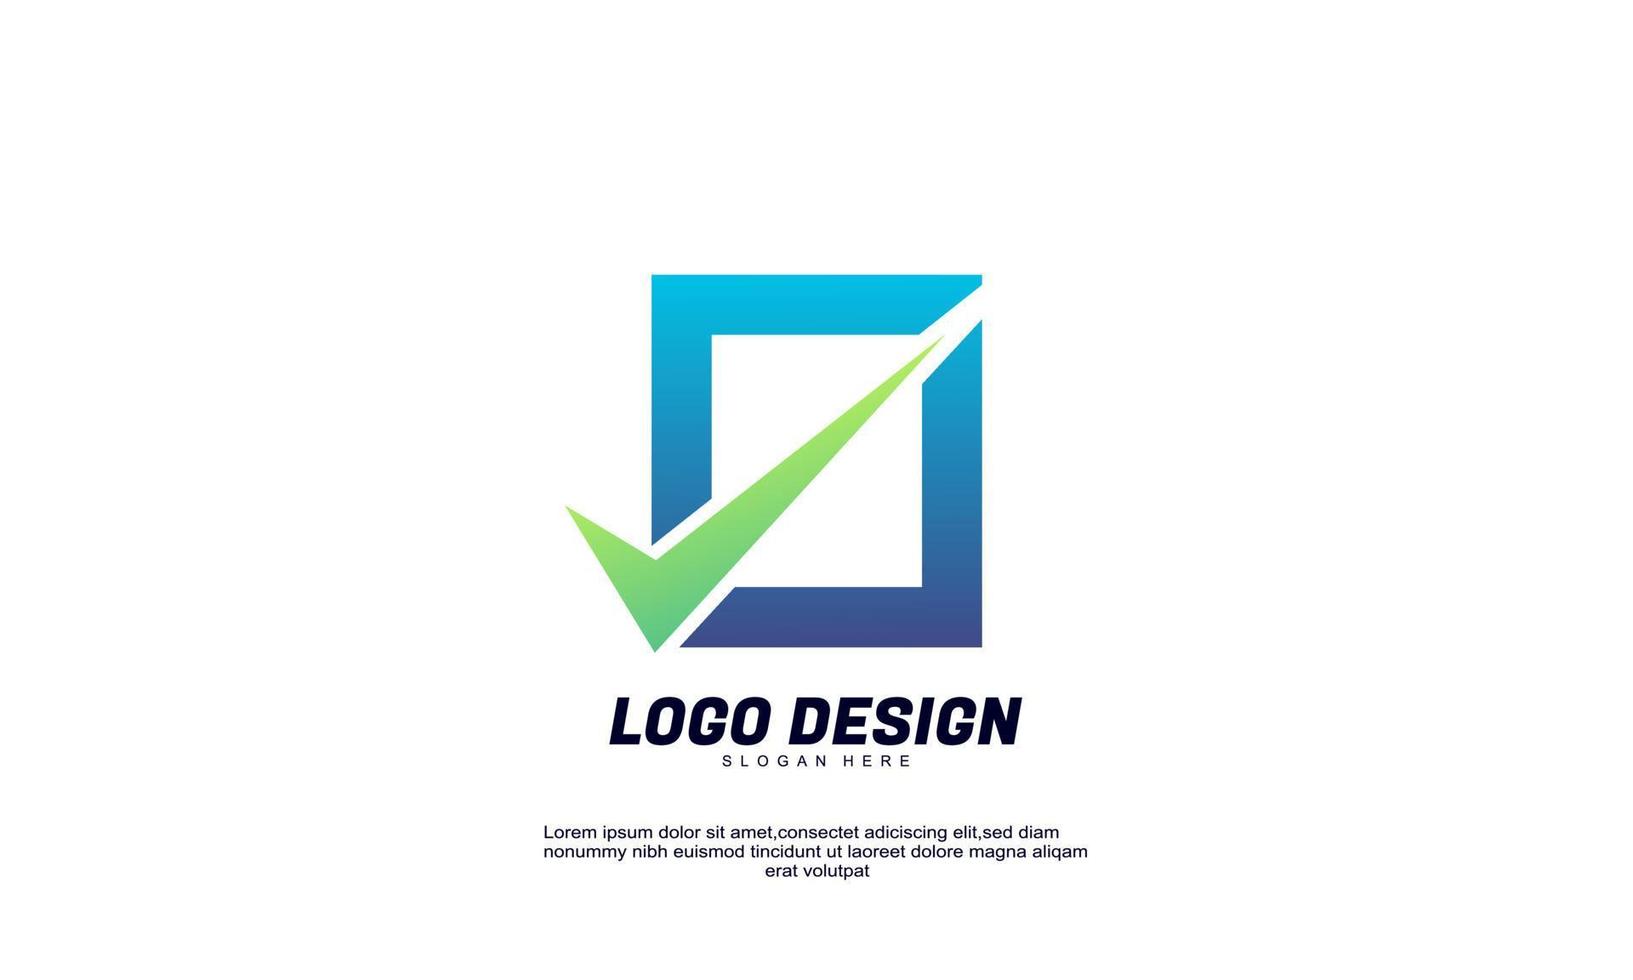 fantastisk kreativ logotyp rektangel och leta efter affärsframgång aktiemarknadsutveckling logotypikon vektor